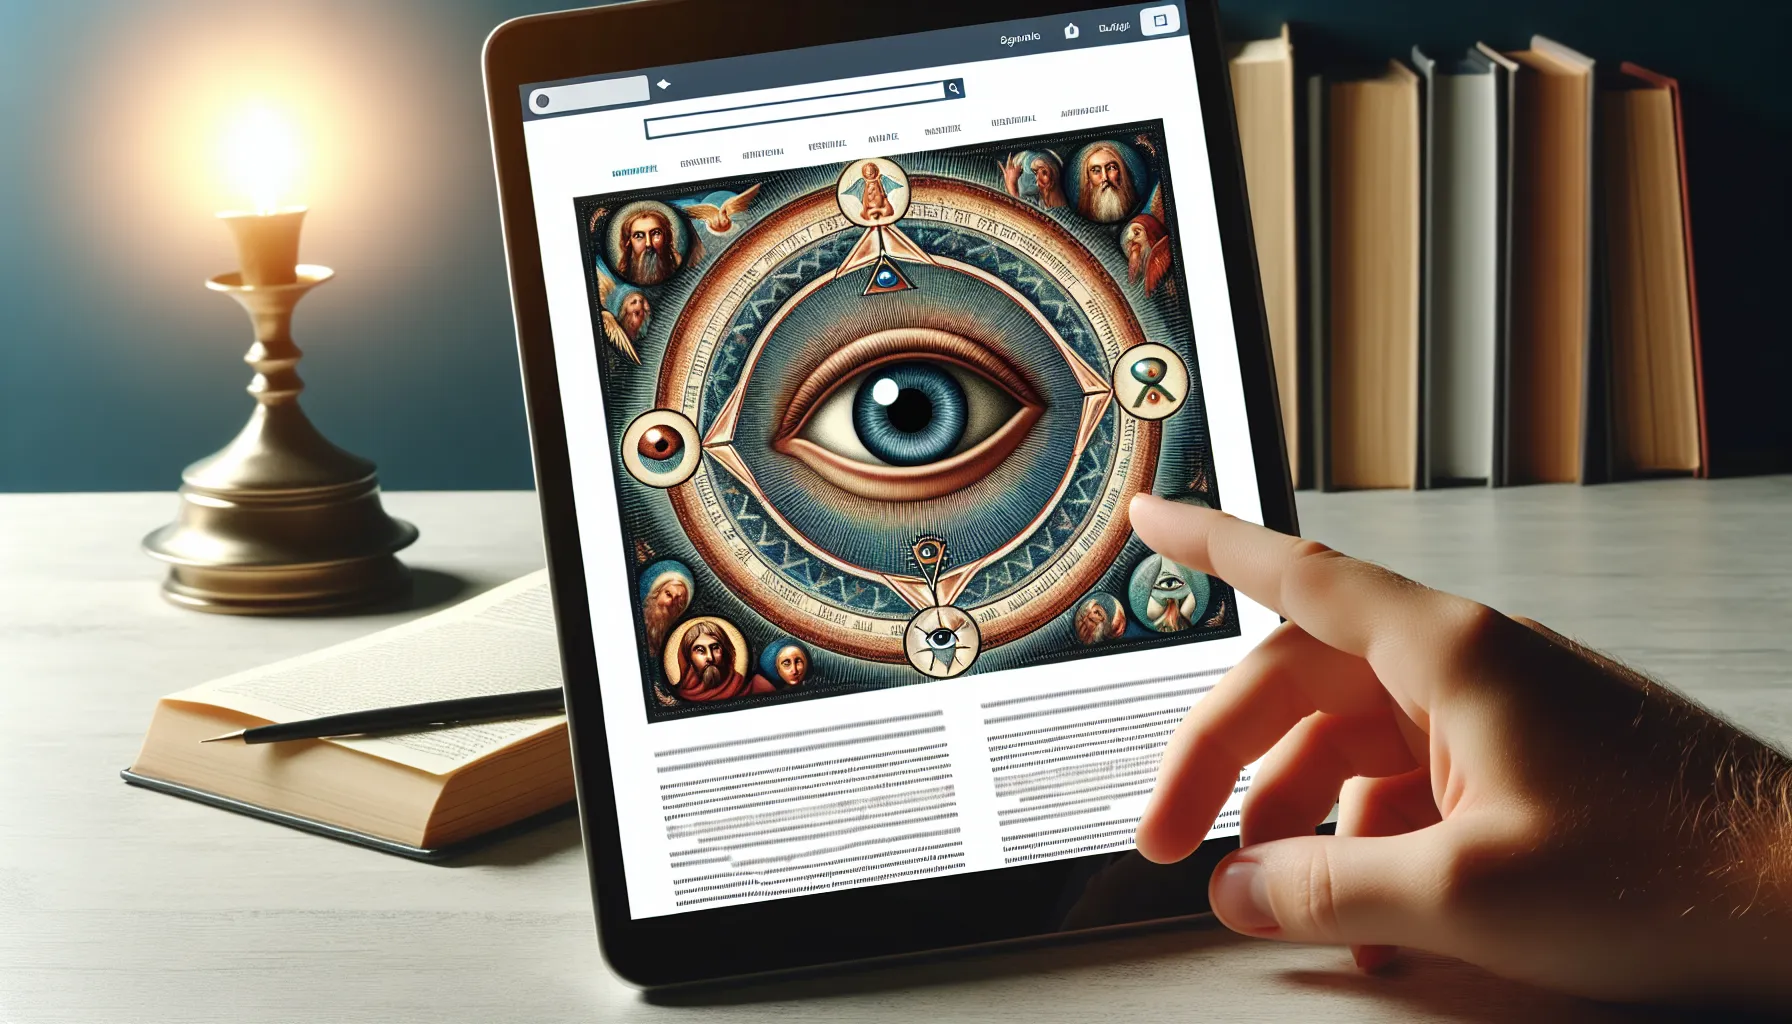 Símbolo del Ojo que Todo lo Ve representado en una ilustración con referencias bíblicas en un artículo web sobre su significado según la Biblia.